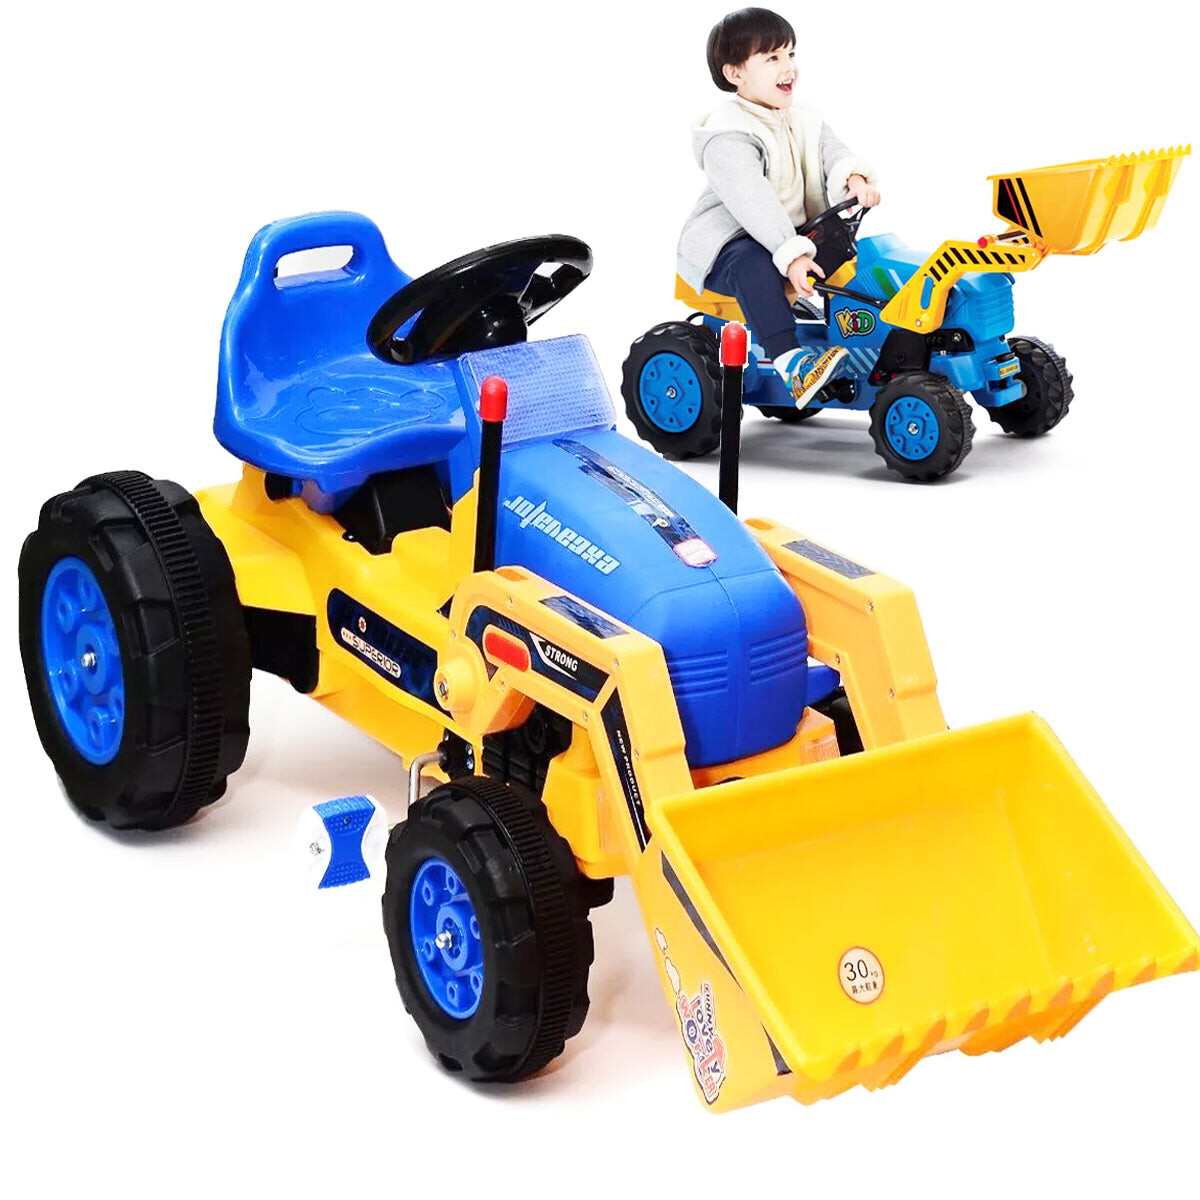 Tractor C/ Pala, Luces Y Sonido Excavadora A Pedal - Azul/Amarillo 